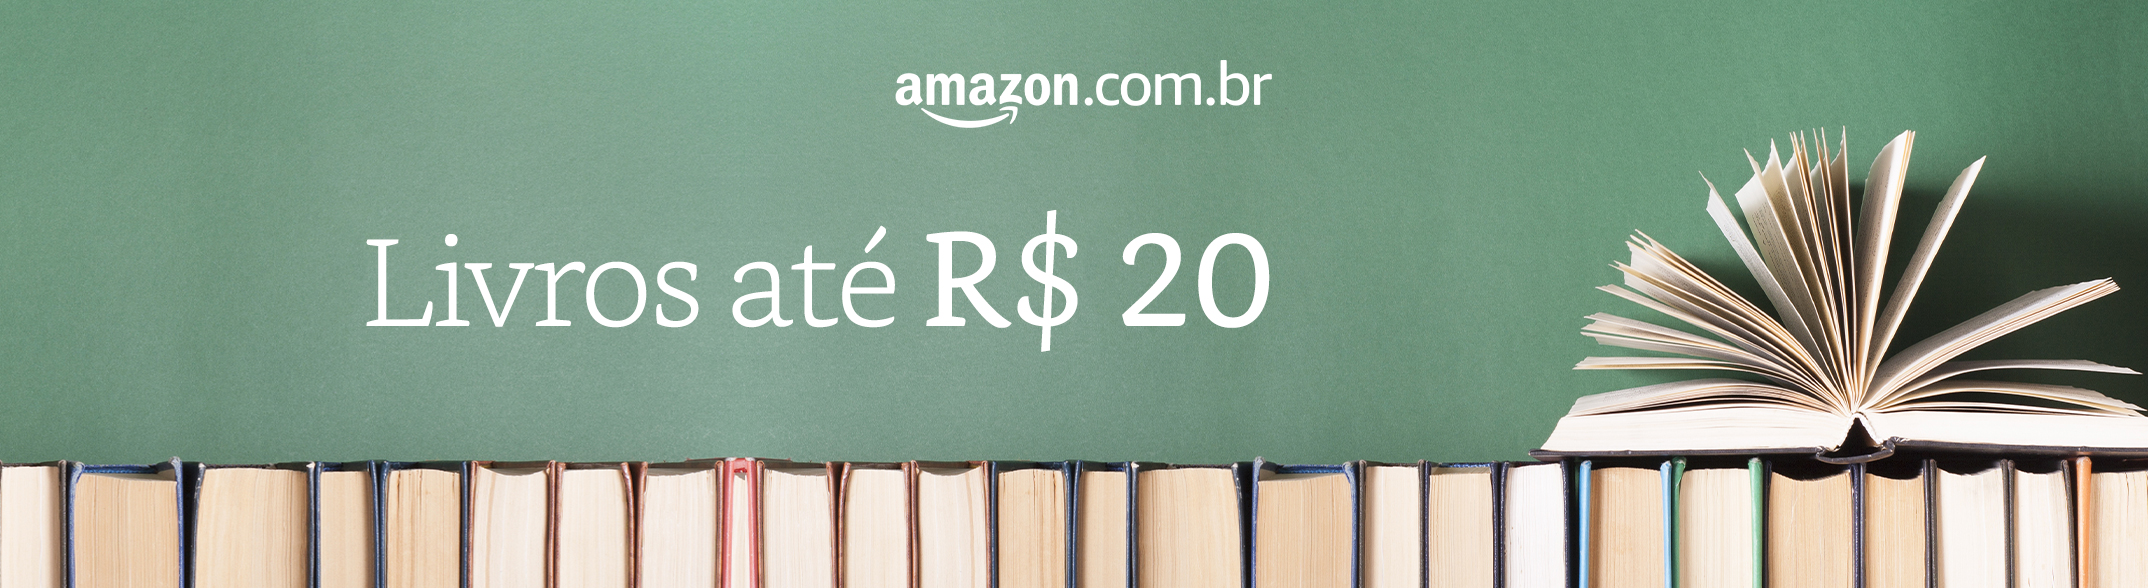 Amazon Livros Até 20 Reais